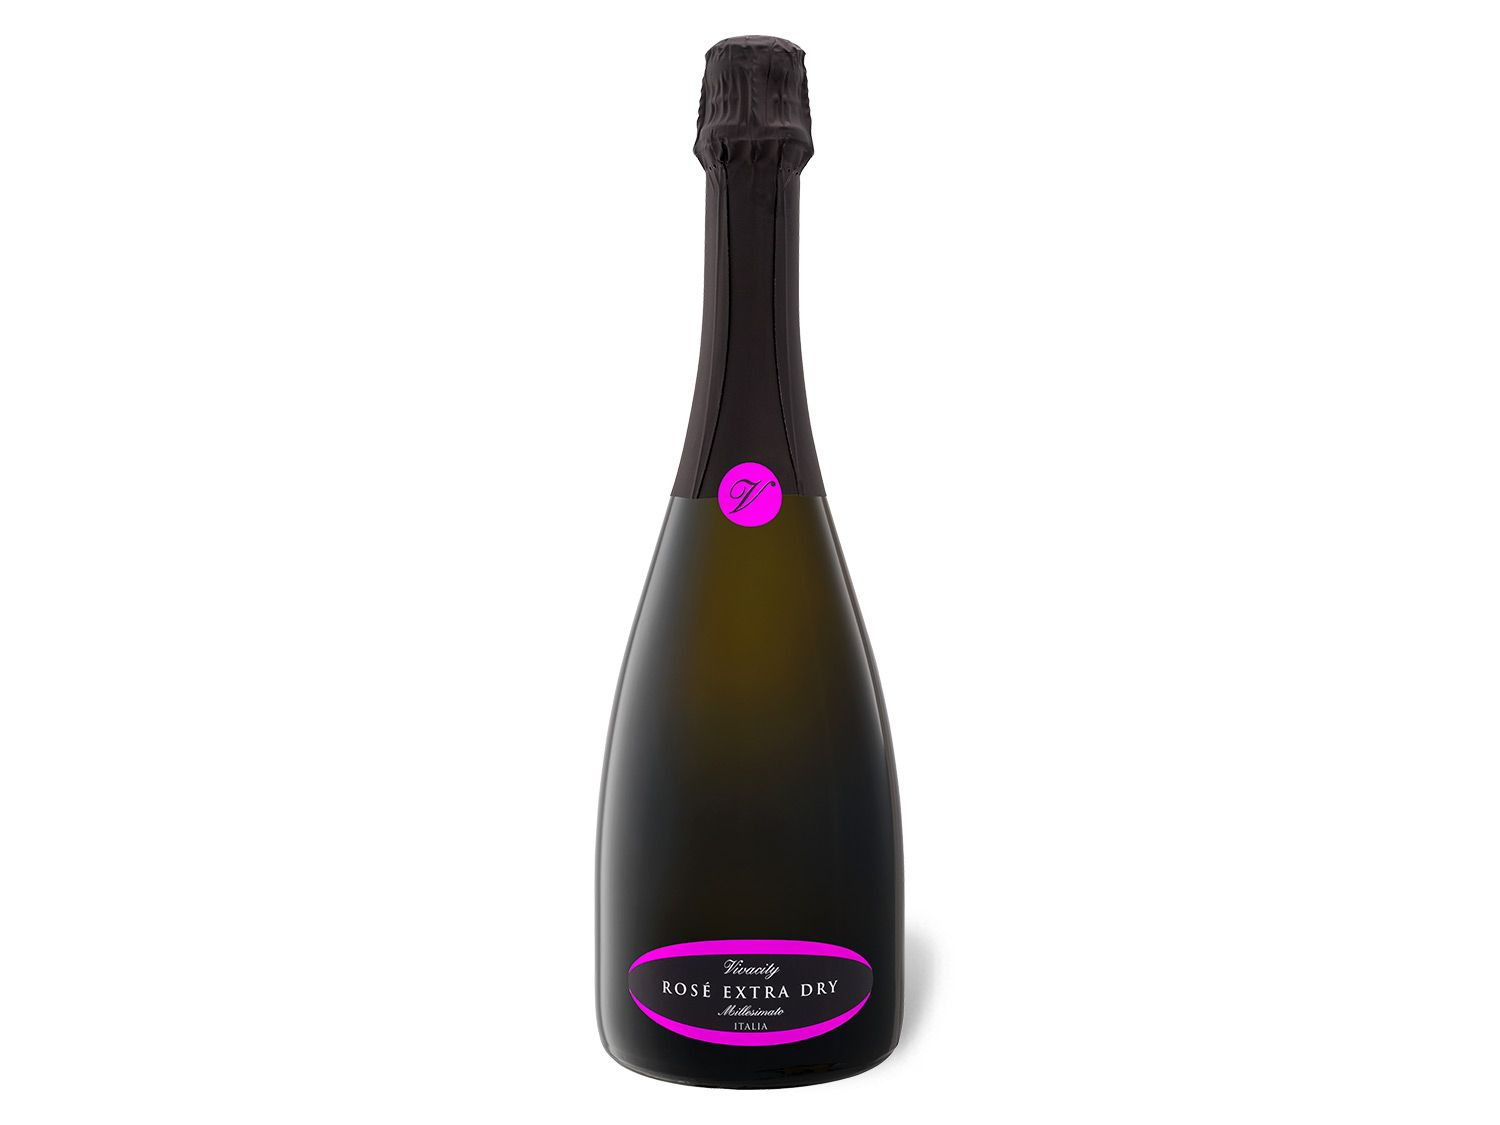 Rosè Spumante dry, Vivacity Schaumwein Vino 2020 extra